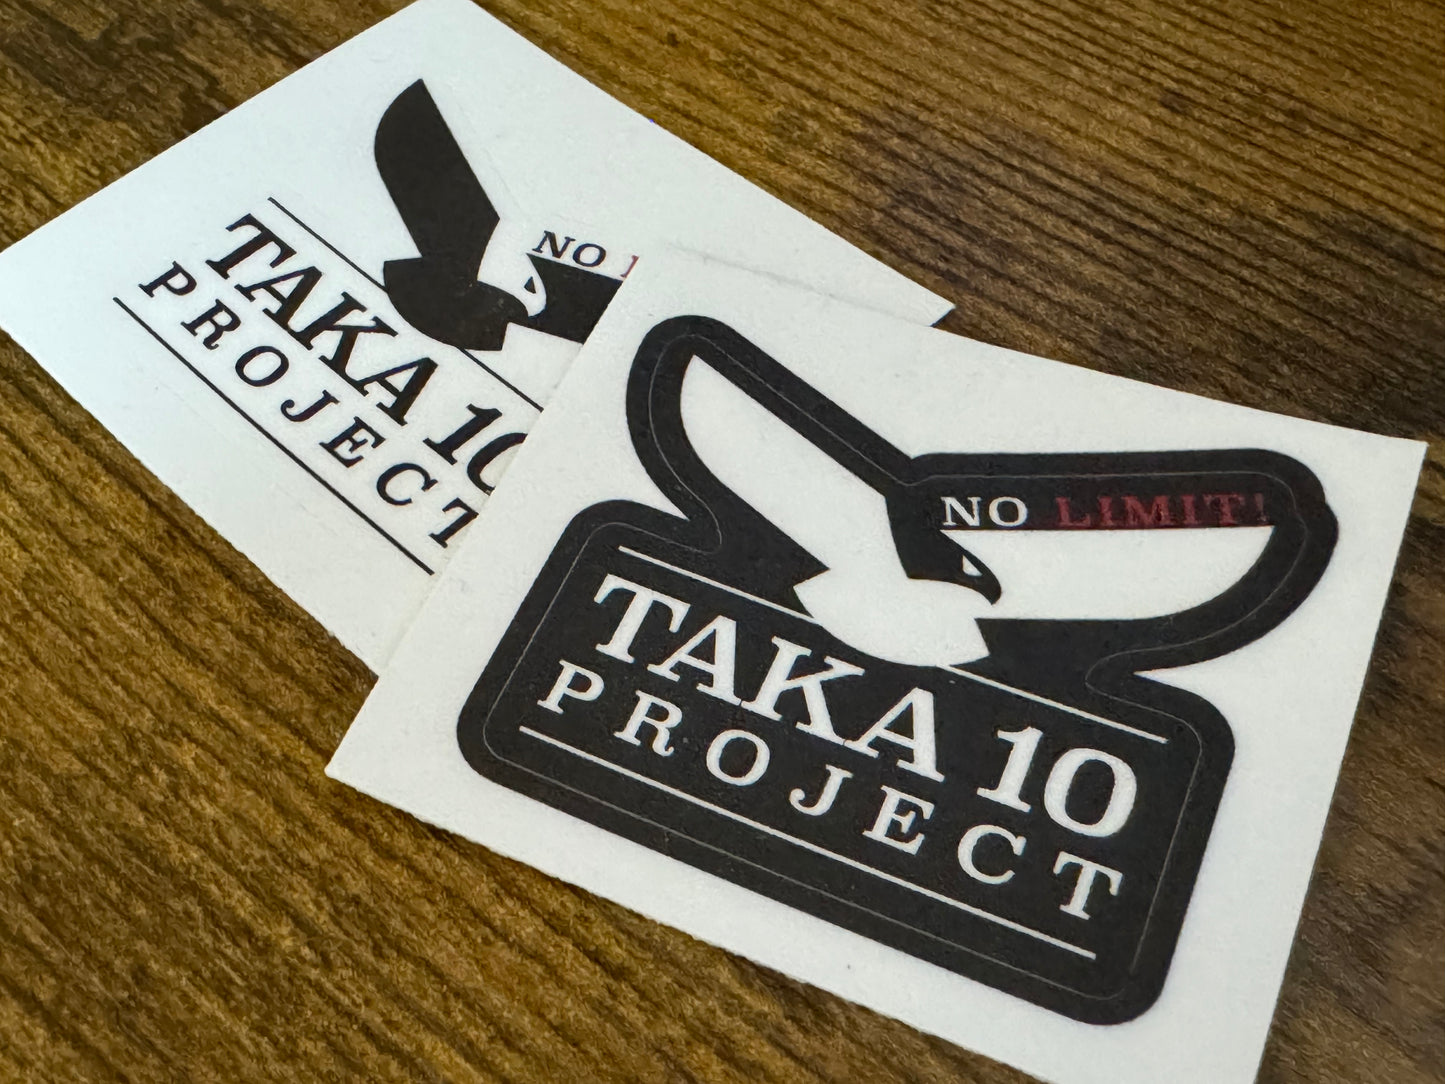 TAKA10ステッカー 小 (黒)